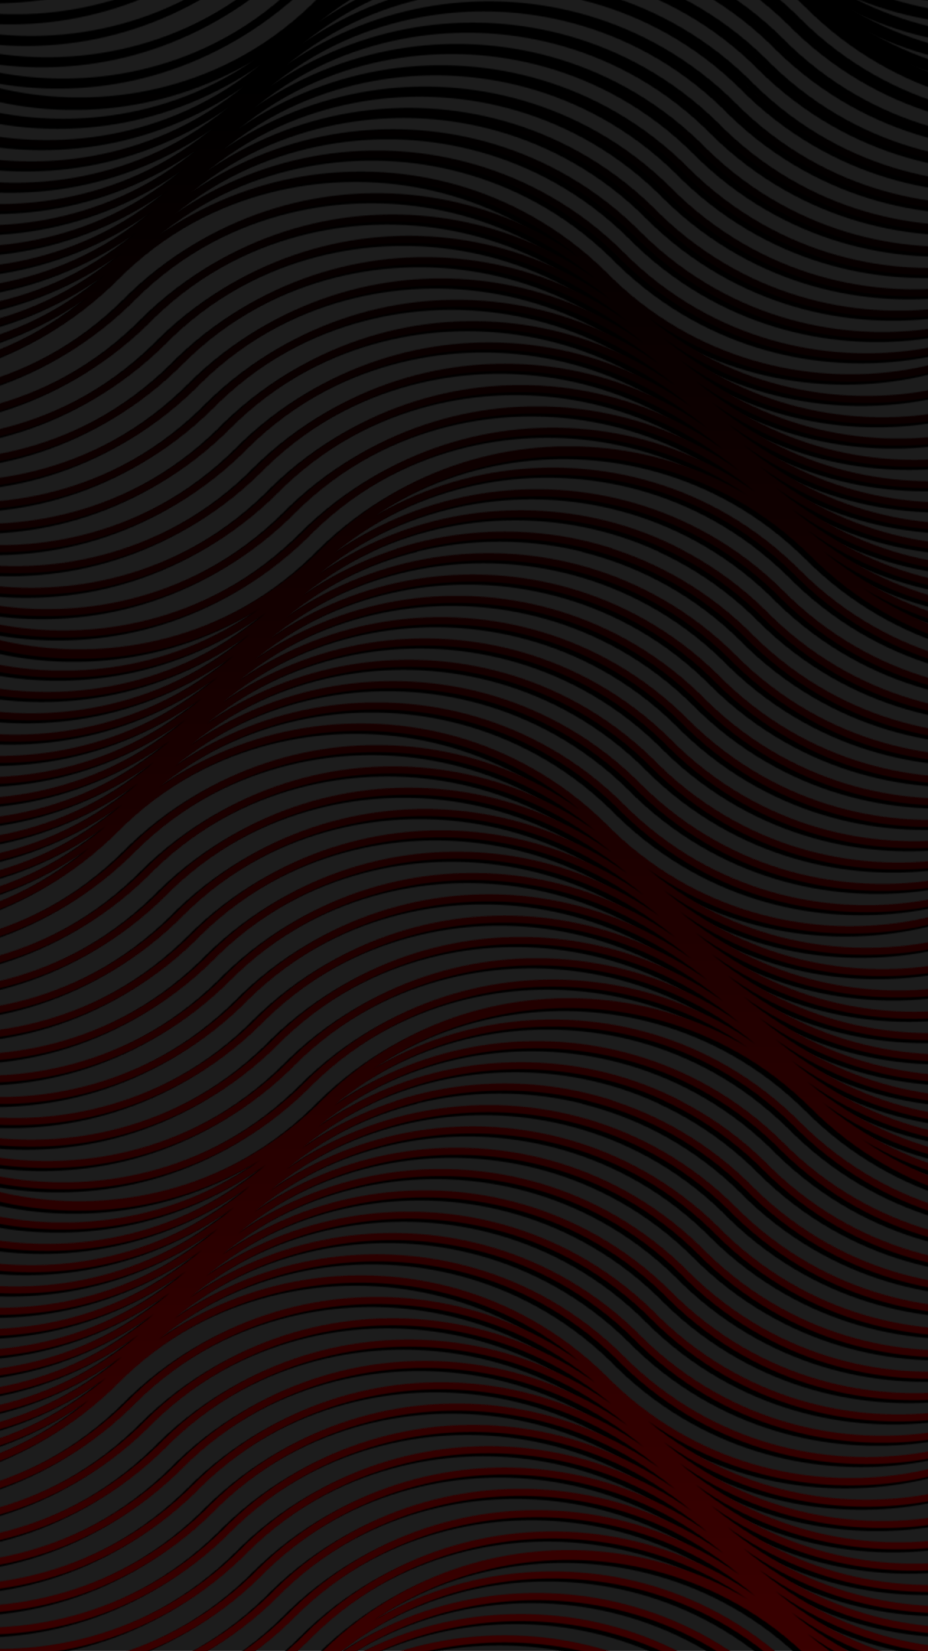 Hình nền tuyến tính 928x1651 đen và đỏ - Hình nền cho công nghệ